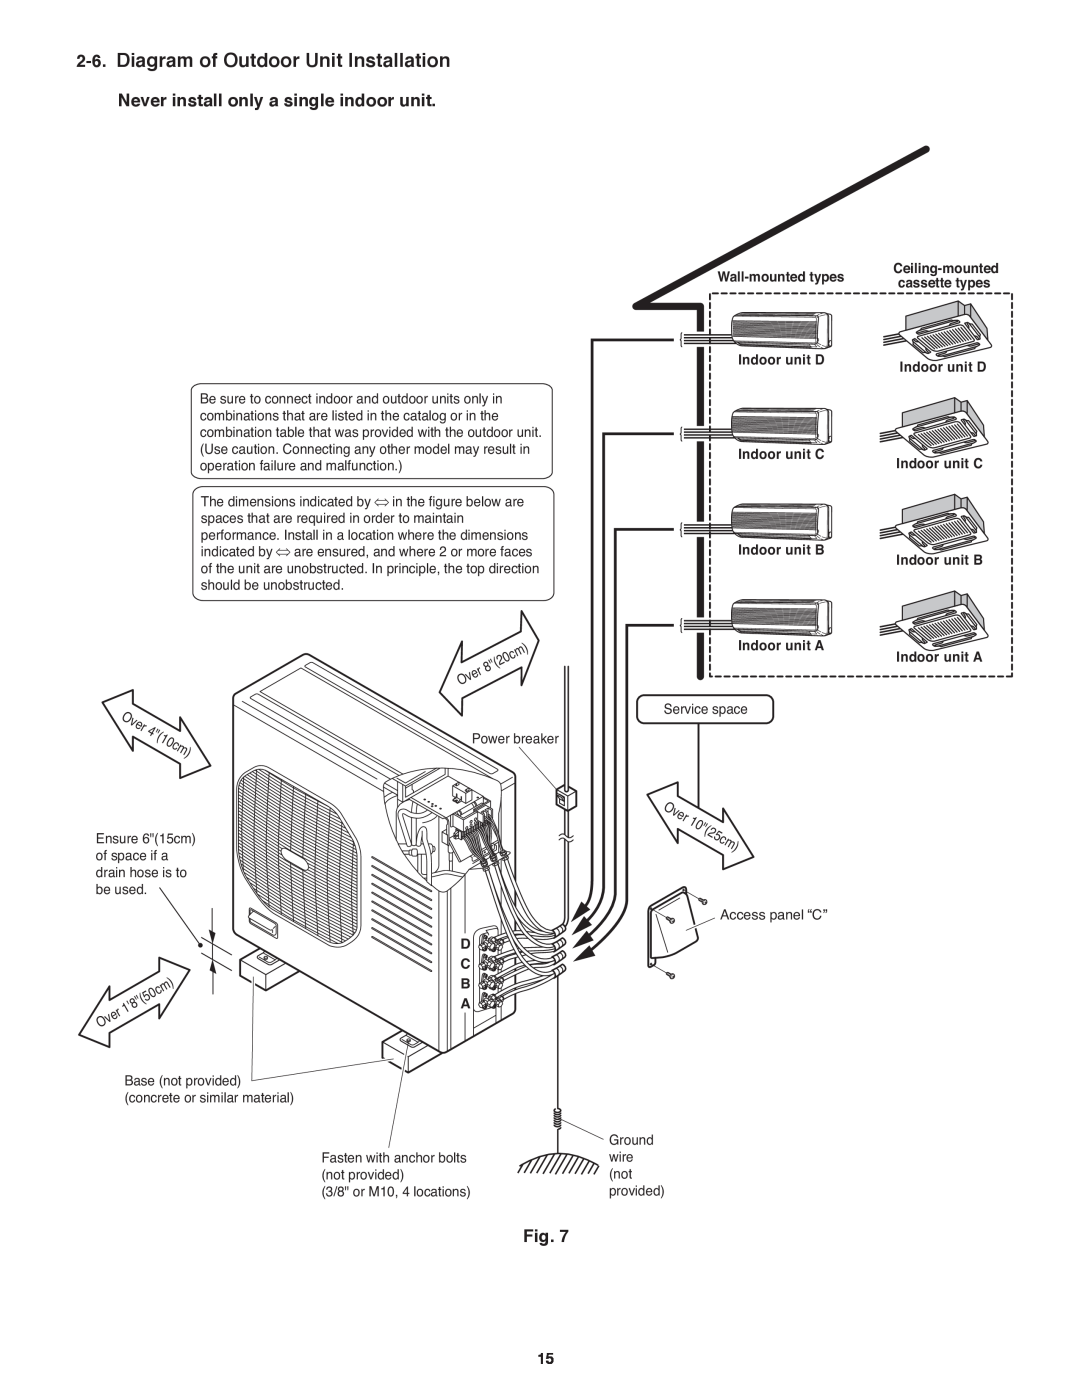 Panasonic CU-4KE31NBU Diagram of Outdoor Unit Installation, Indoor unit D, Indoor unit C Indoor unit B, Indoor unit A 